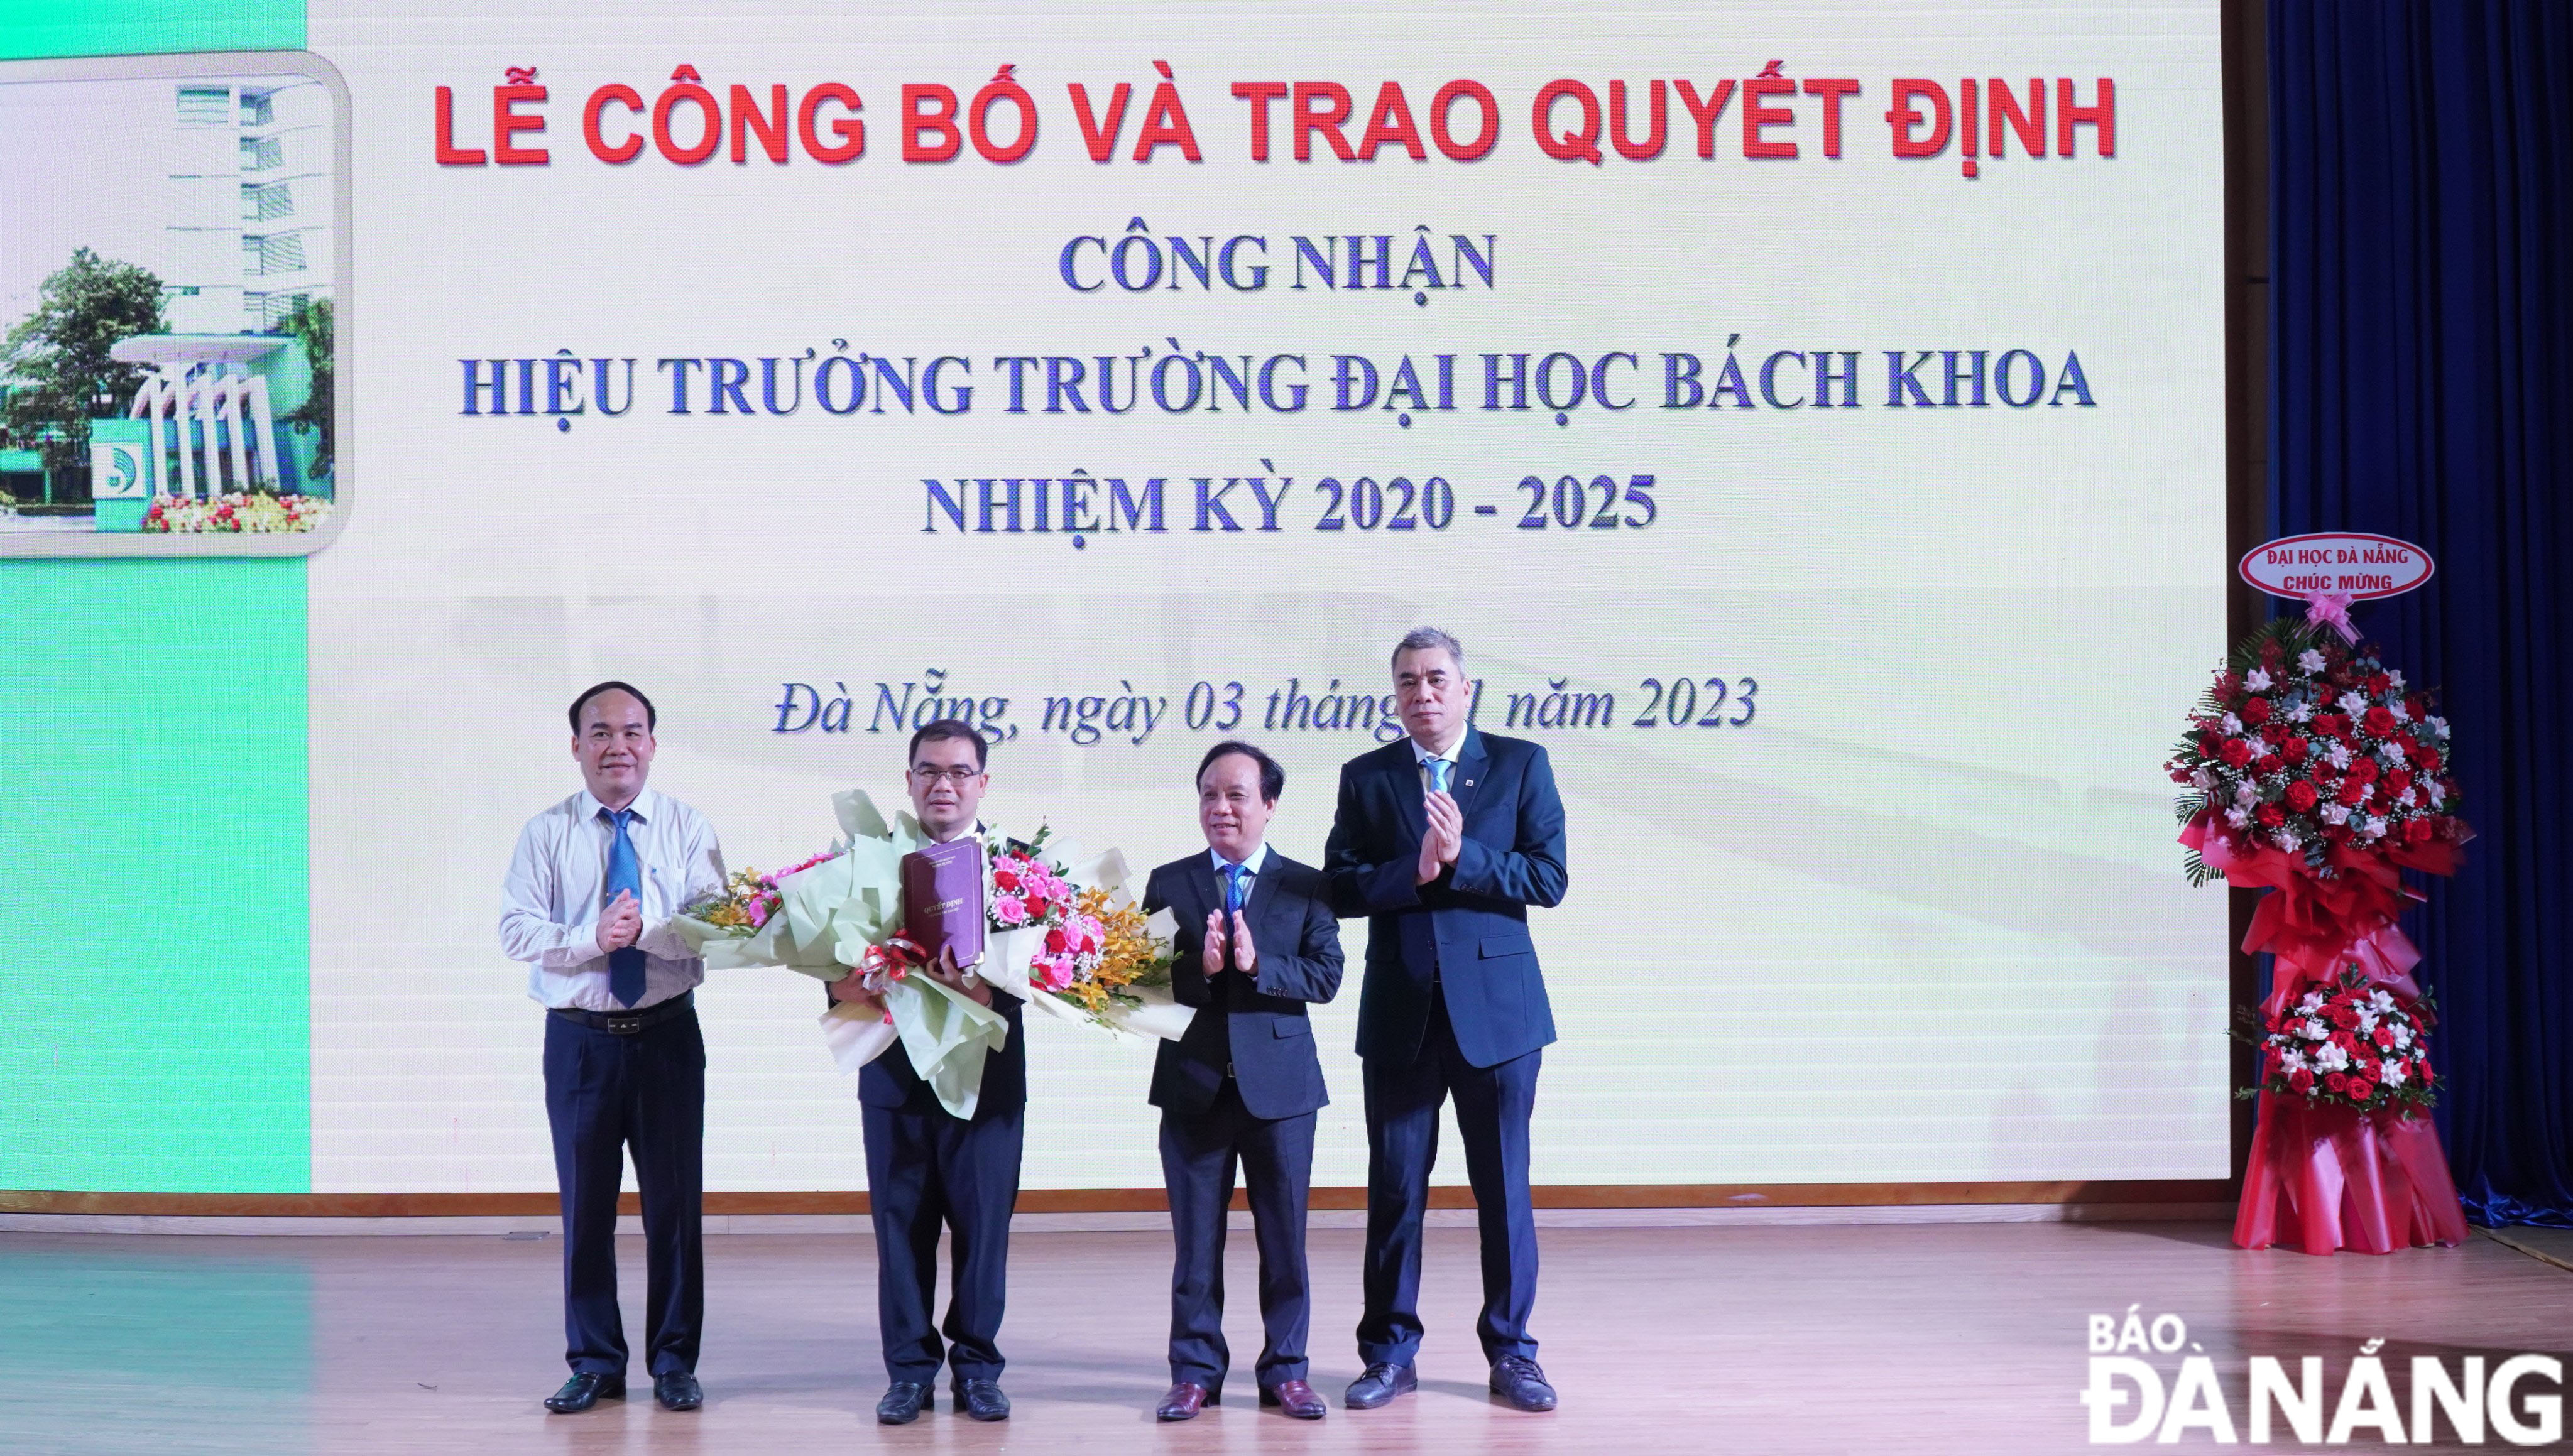 PGS.TS. Nguyễn Hữu Hiếu (thứ hai từ trái sang) được bổ nhiệm làm Hiệu trưởng Trường ĐH Bách khoa, nhiệm kỳ 2020-2025. Ảnh: NGỌC HÀ